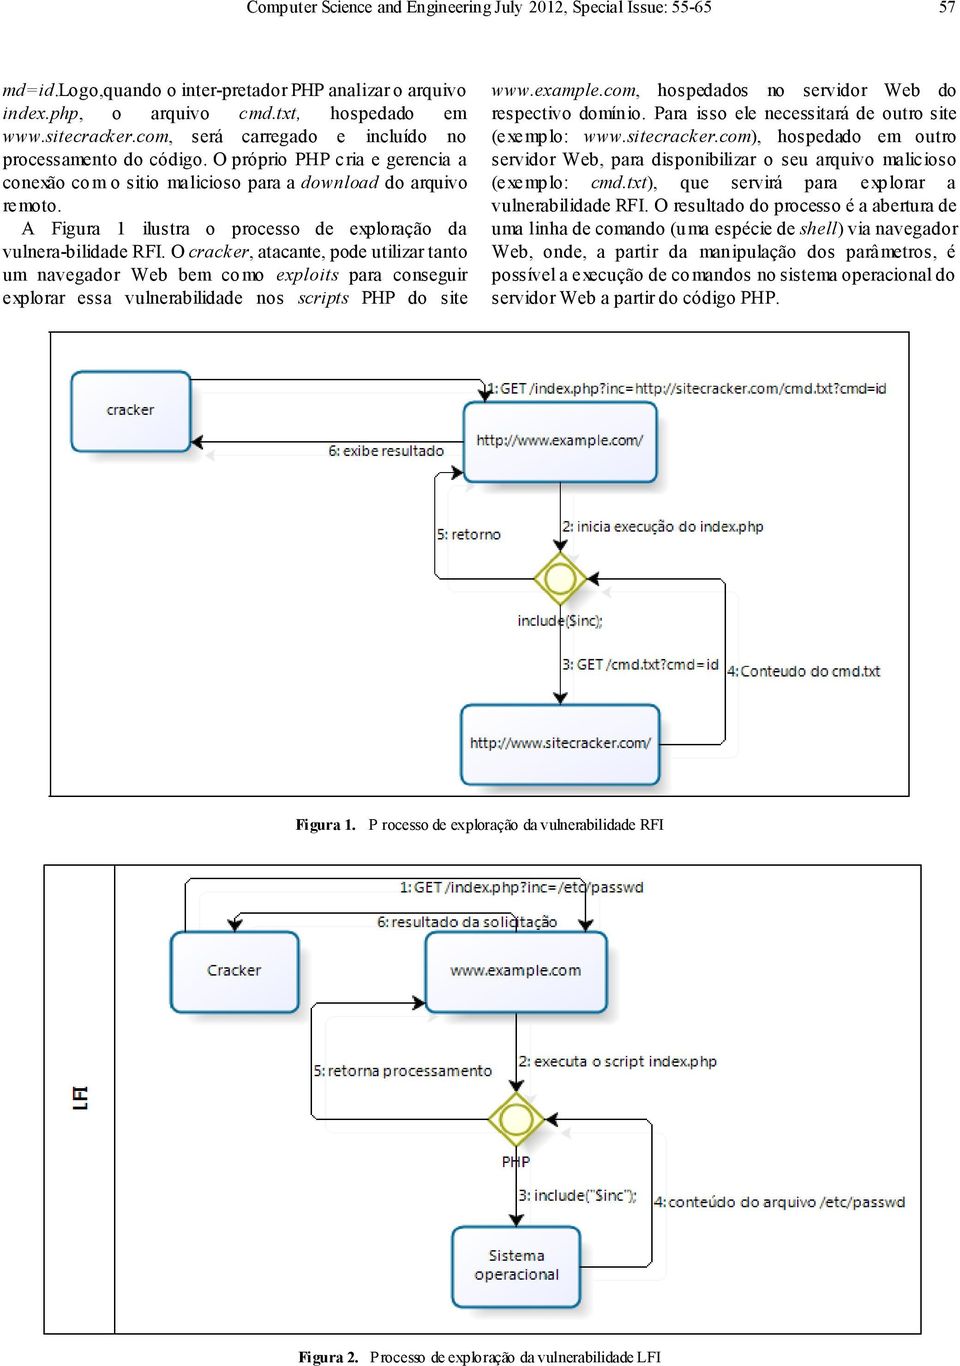 A Figura 1 ilustra o processo de exploração da vulnera-bilidade RFI.